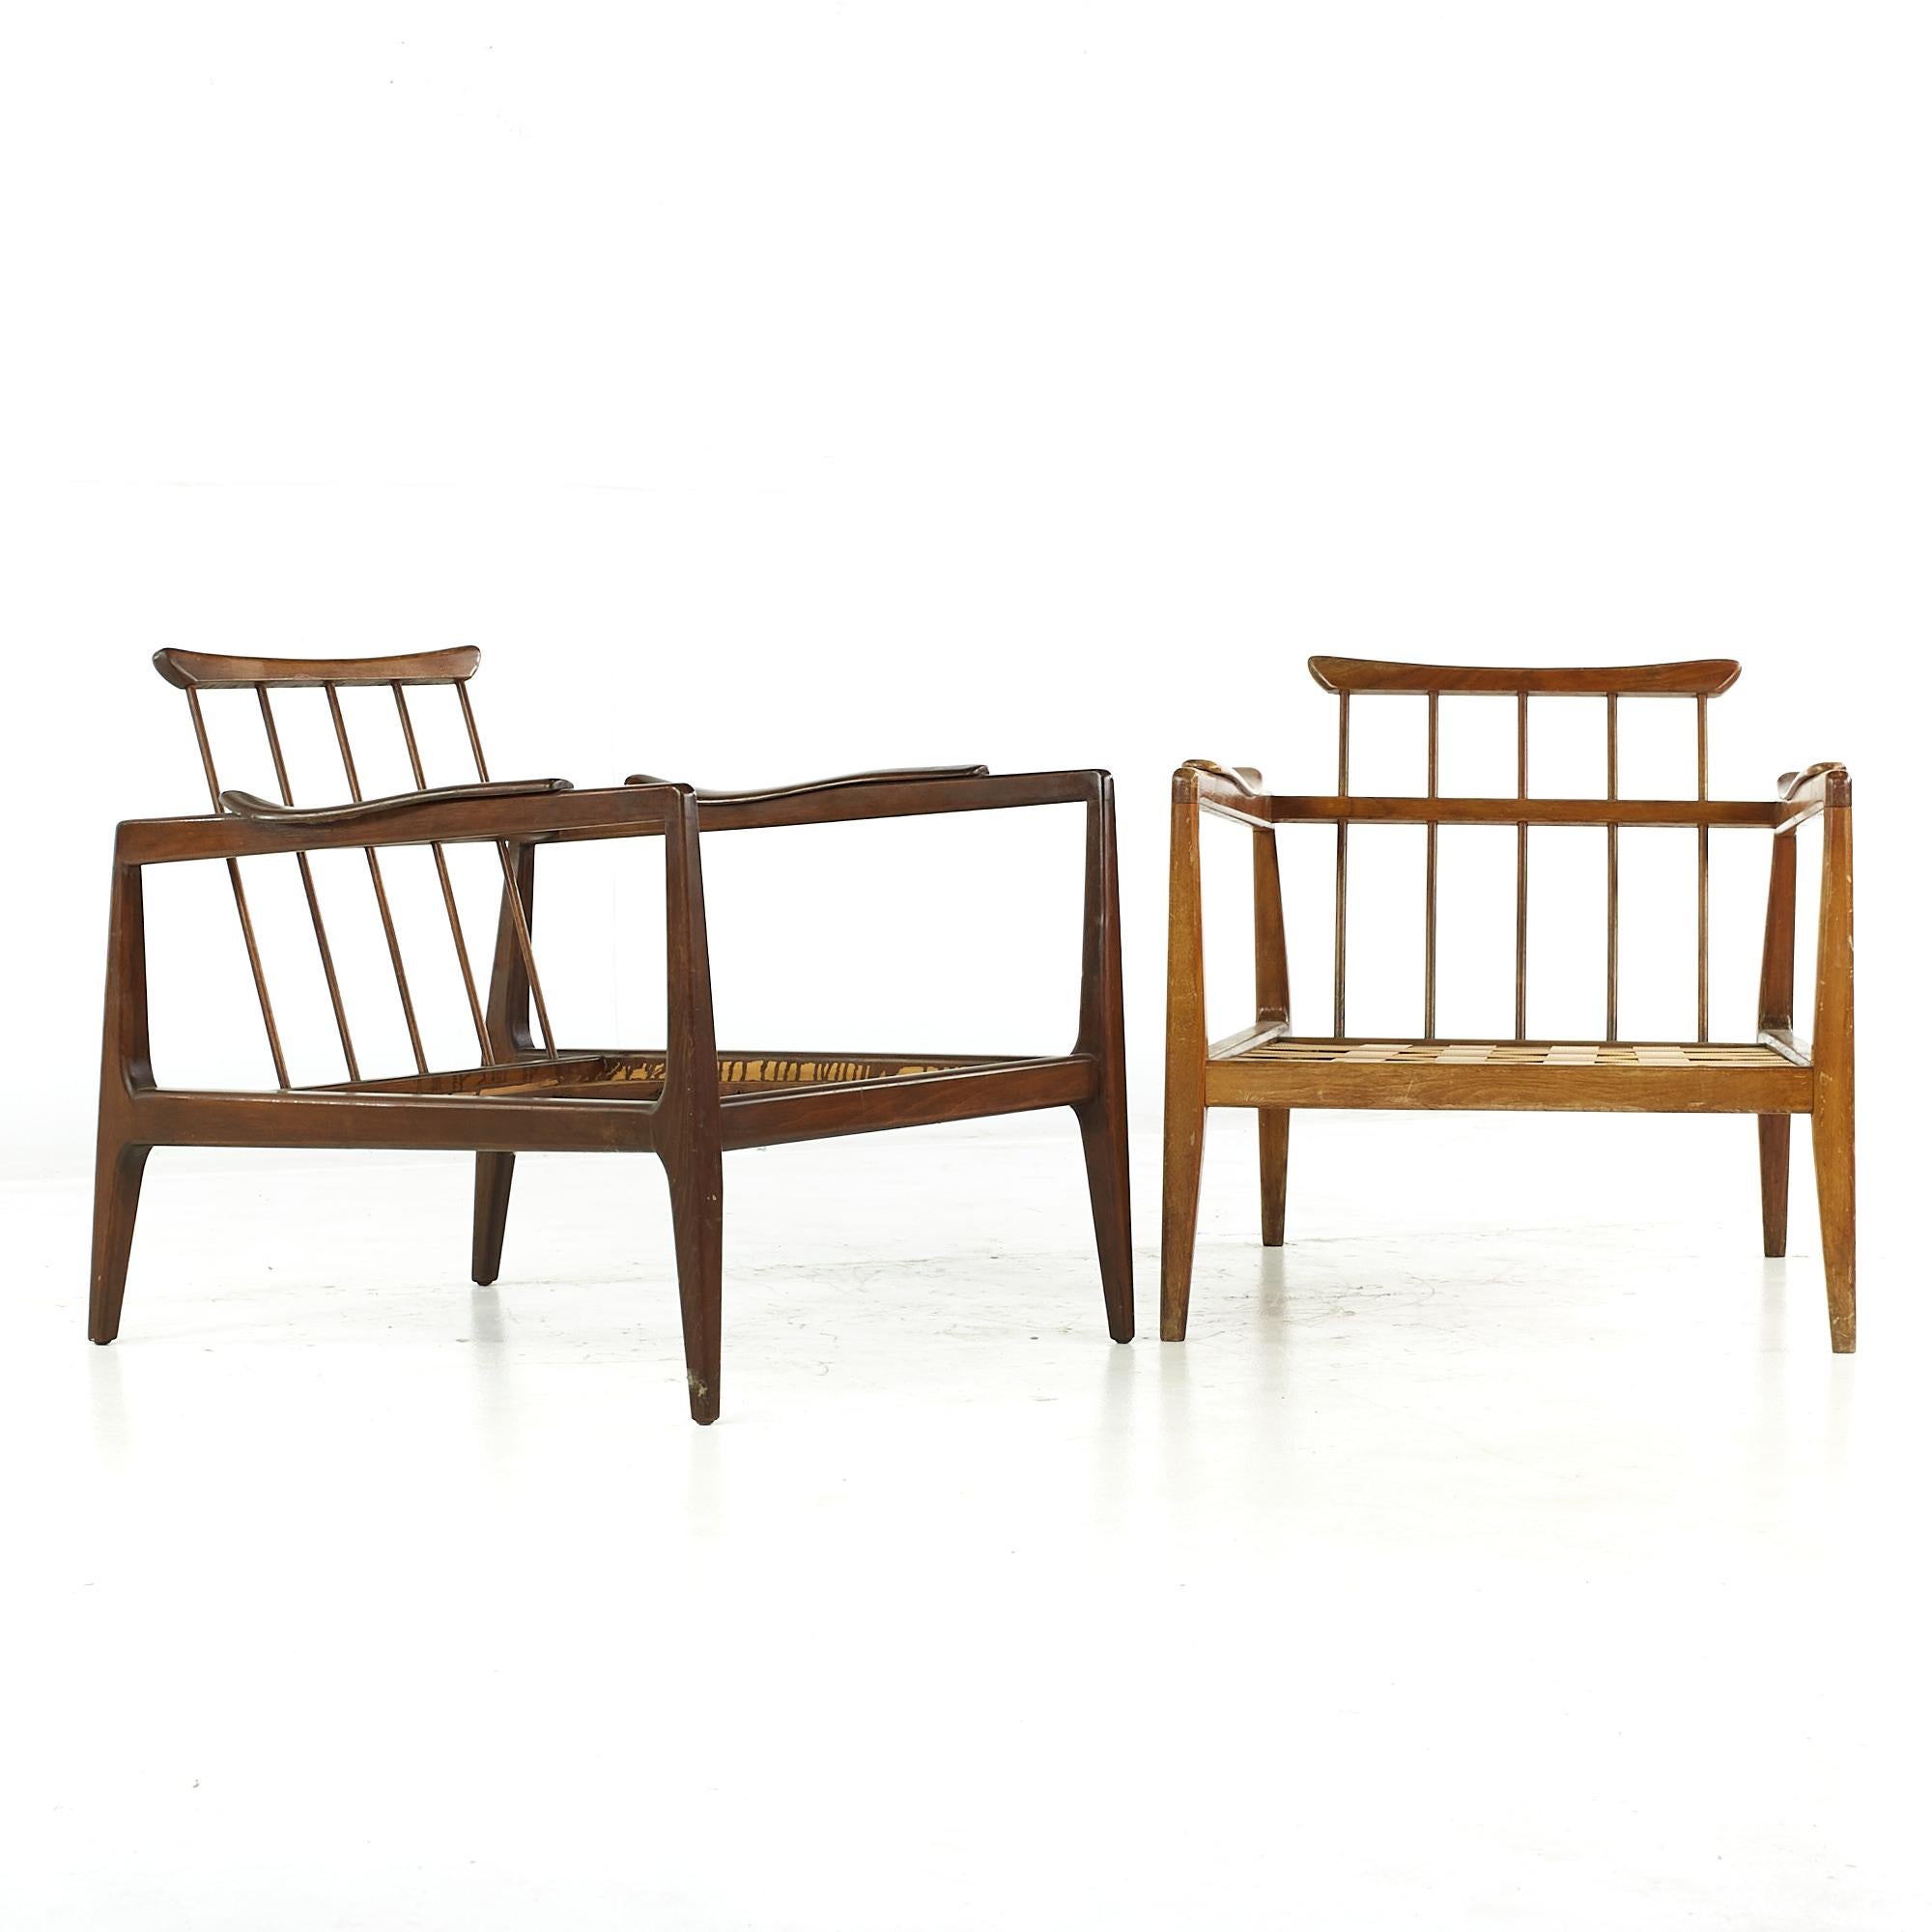 Chaises longues Edmond Spence Mid Century - Paire

Chaque chaise mesure : 27 de large x 33,5 de profond x 28 de haut, avec une hauteur d'assise de 13 (sans coussin) et une hauteur d'accoudoir/de dégagement de 23 pouces.

Tous les meubles peuvent